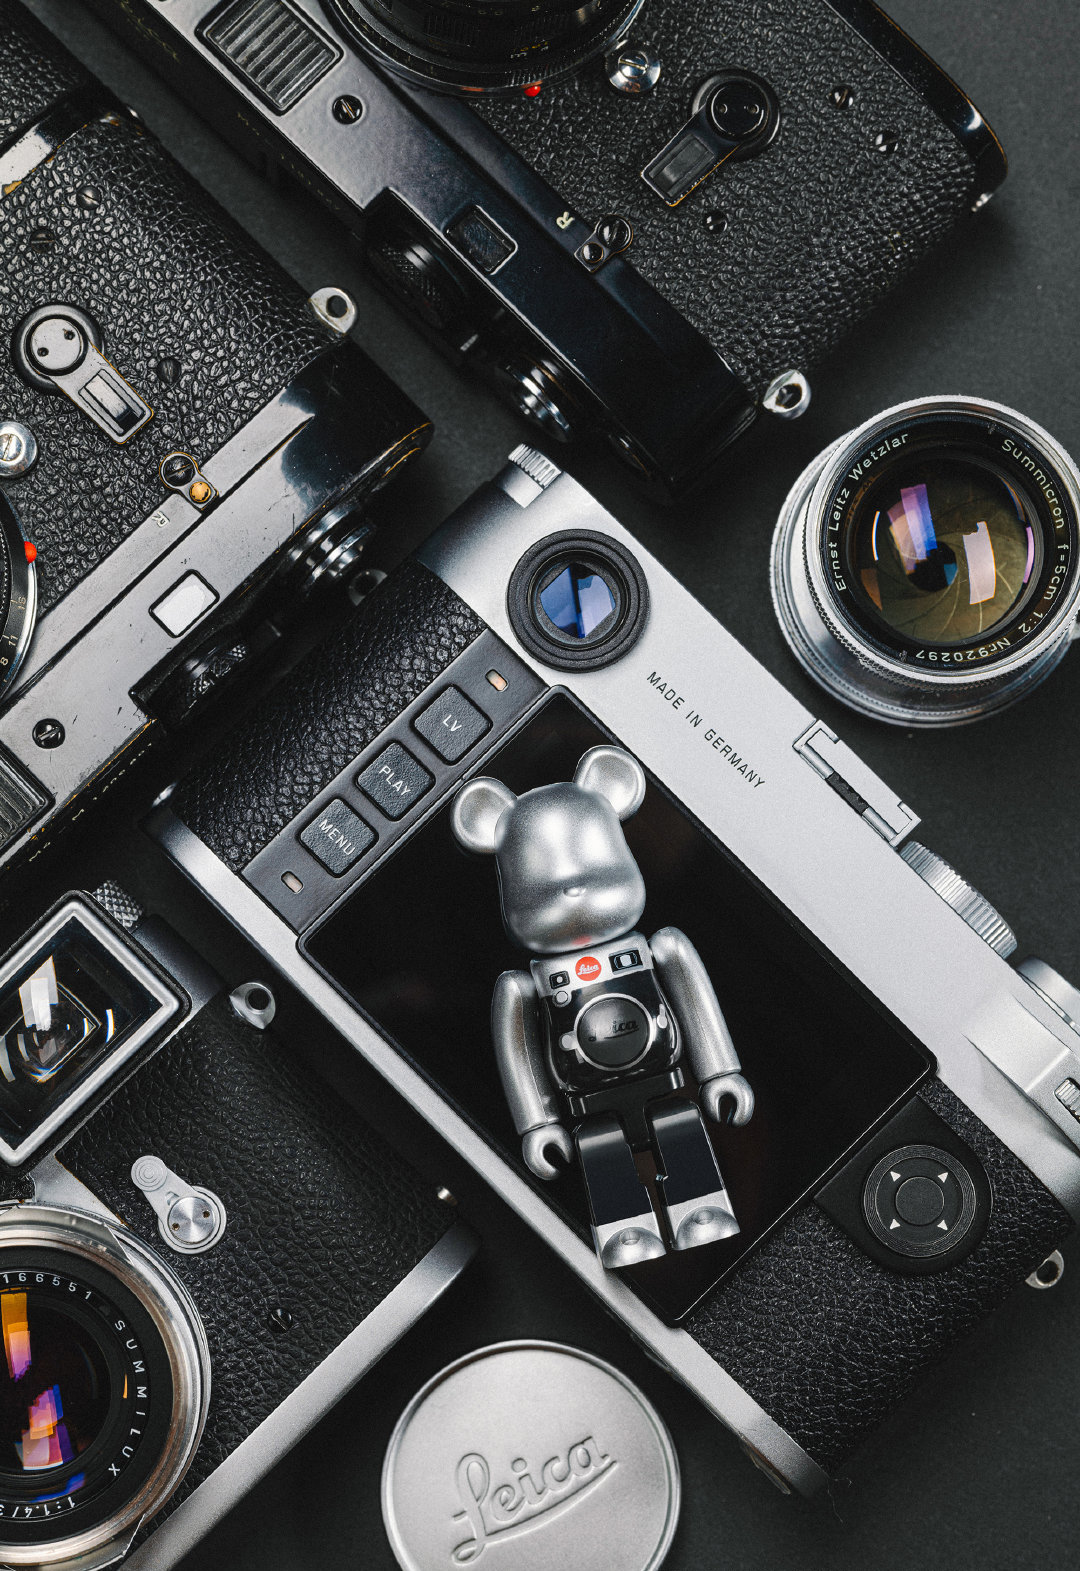 Leica x Medicom Toy là một sản phẩm độc đáo, kết hợp giữa việc chụp ảnh và nghệ thuật. Điều này khiến nó trở thành một món đồ quý giá cho những tín đồ yêu thích nhiếp ảnh. Hãy xem ảnh liên quan để cảm nhận sự tuyệt vời của sản phẩm này.